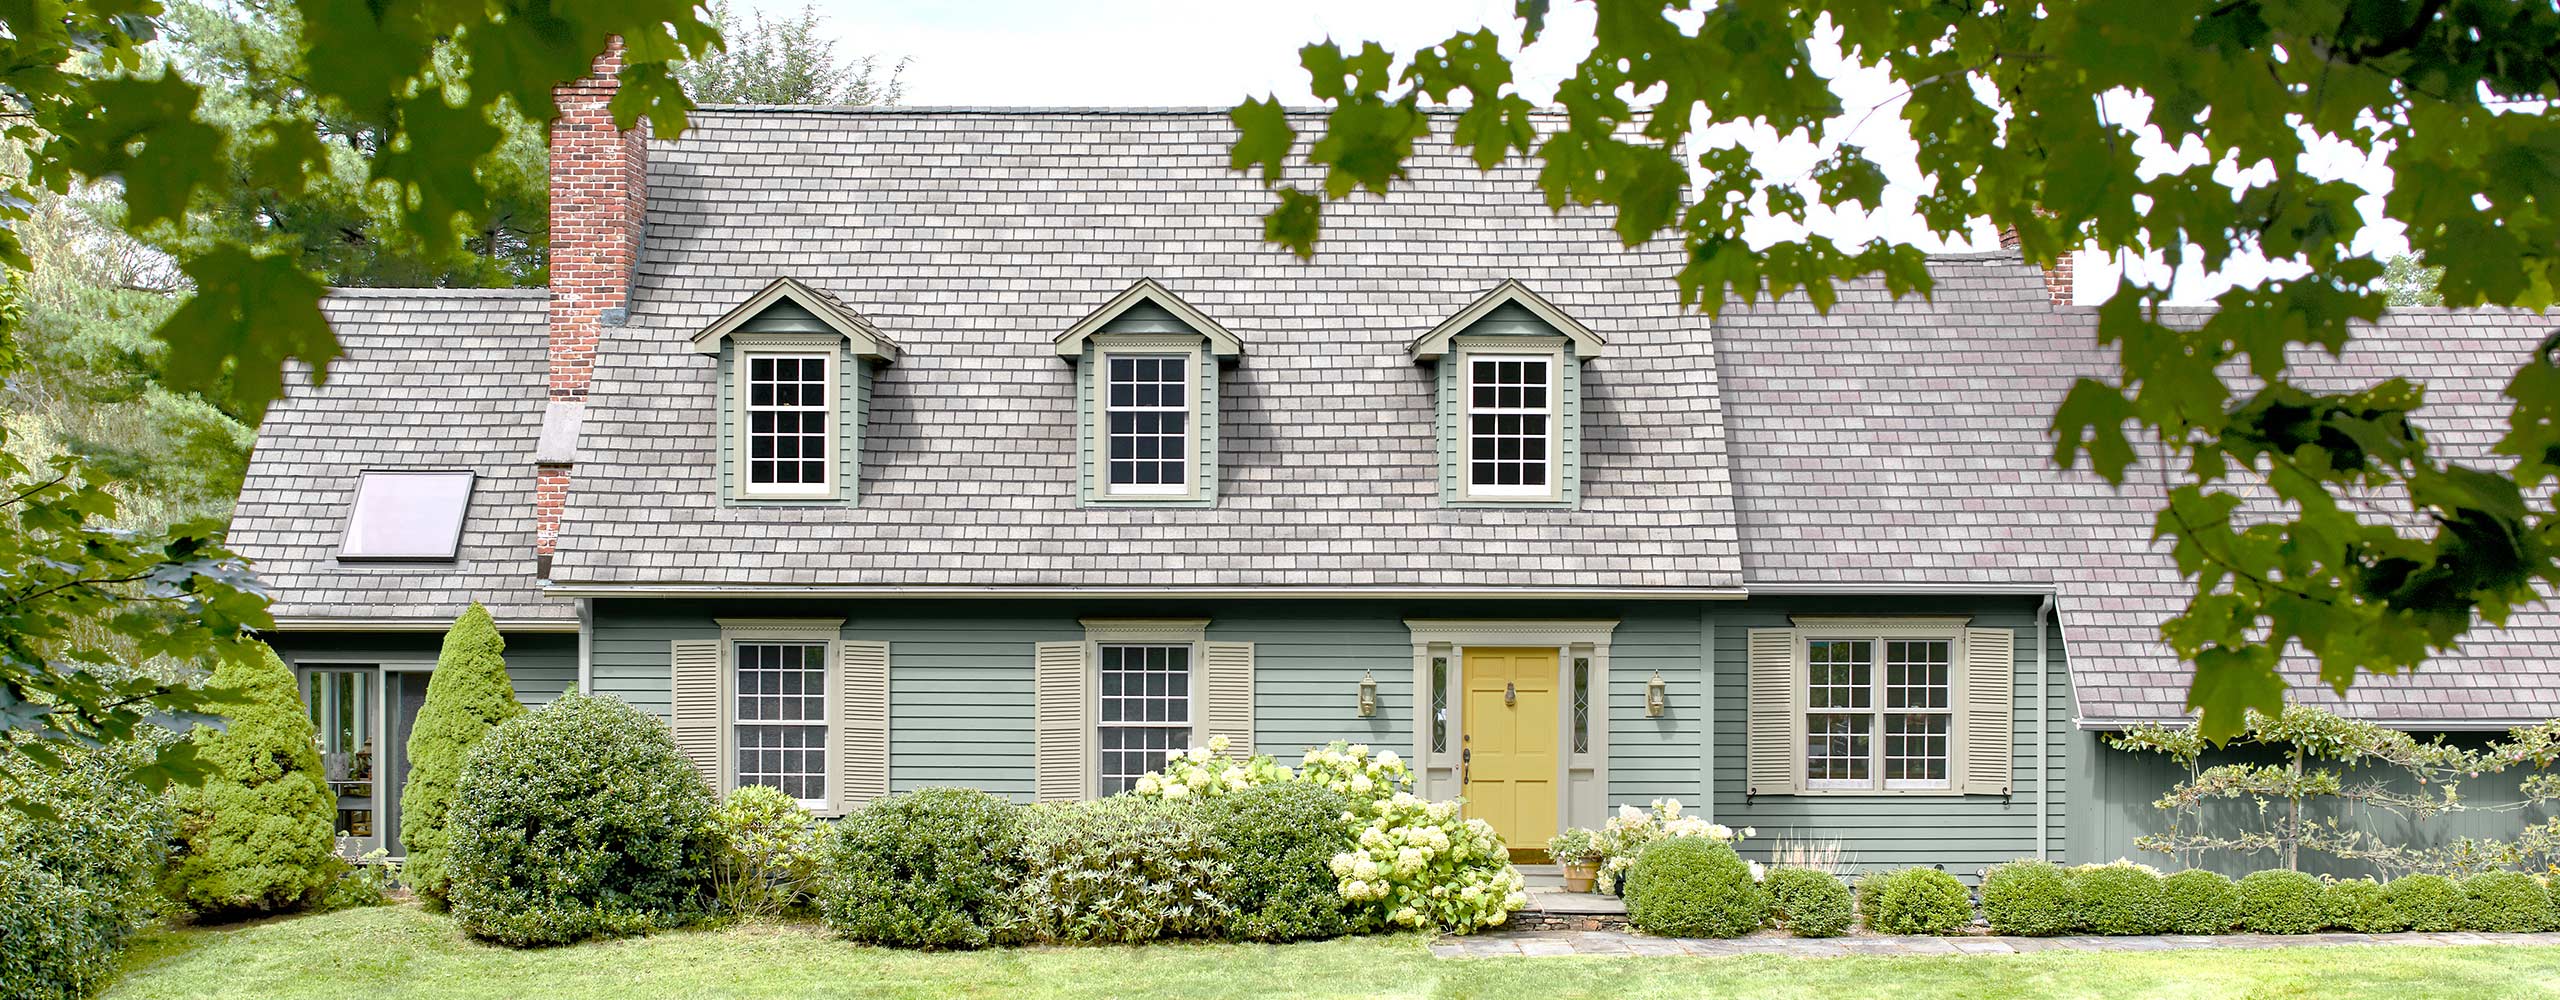 Magnifique maison de style Cape Cod avec parement bleu-gris tendre, persiennes et moulures vert pâle, porte jaune, lucarnes à fenêtres et pelouse et arbustes d’un vert luxuriant.